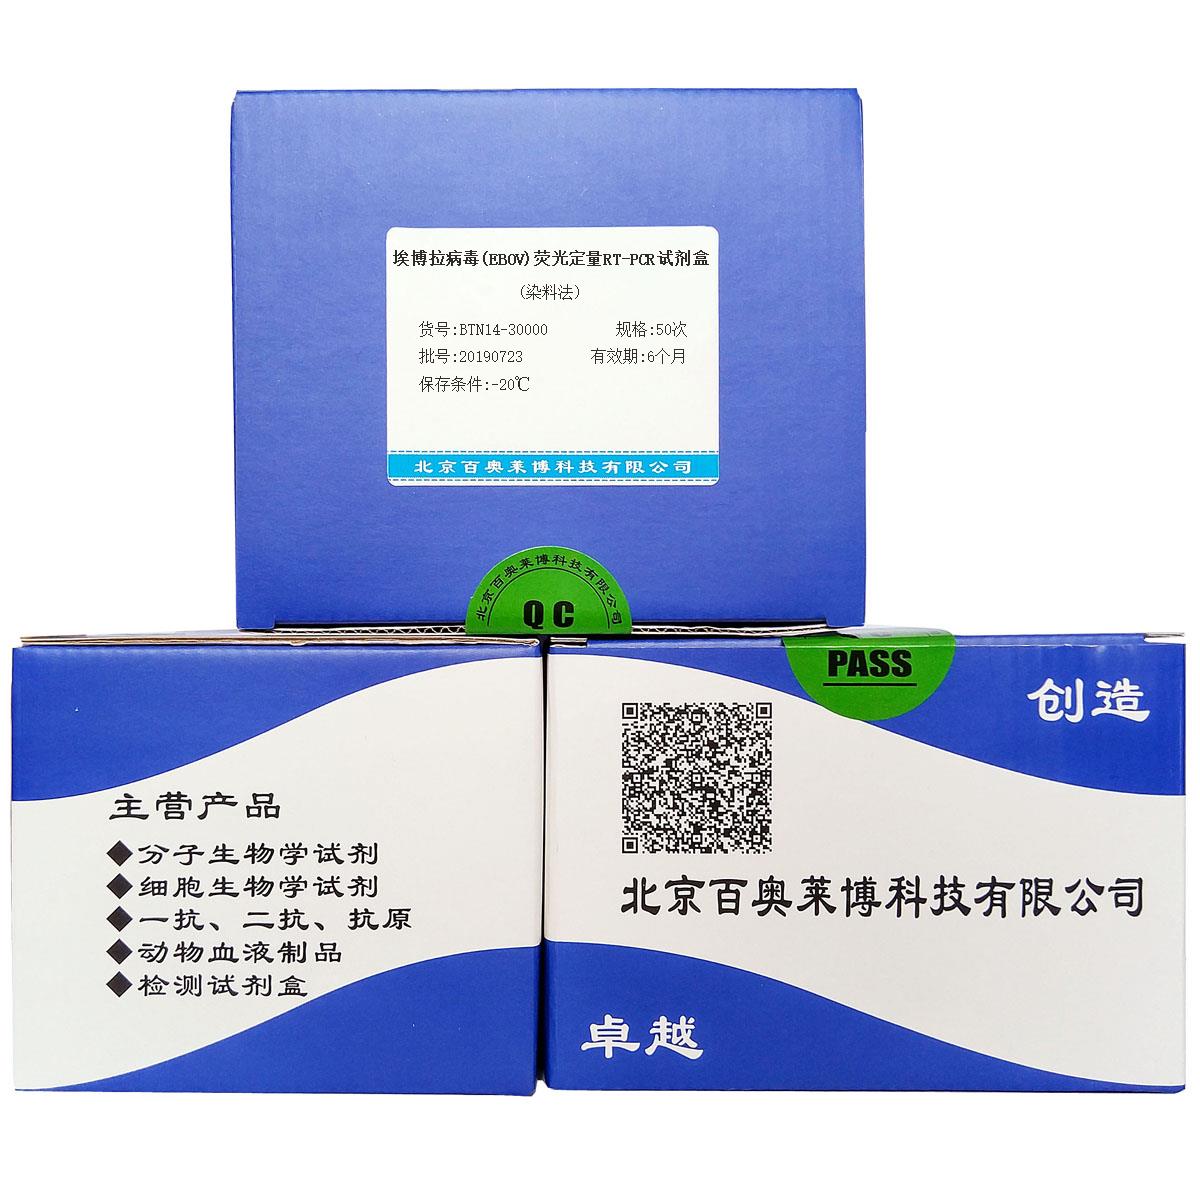 埃博拉病毒(EBOV)荧光定量RT-PCR试剂盒(染料法)